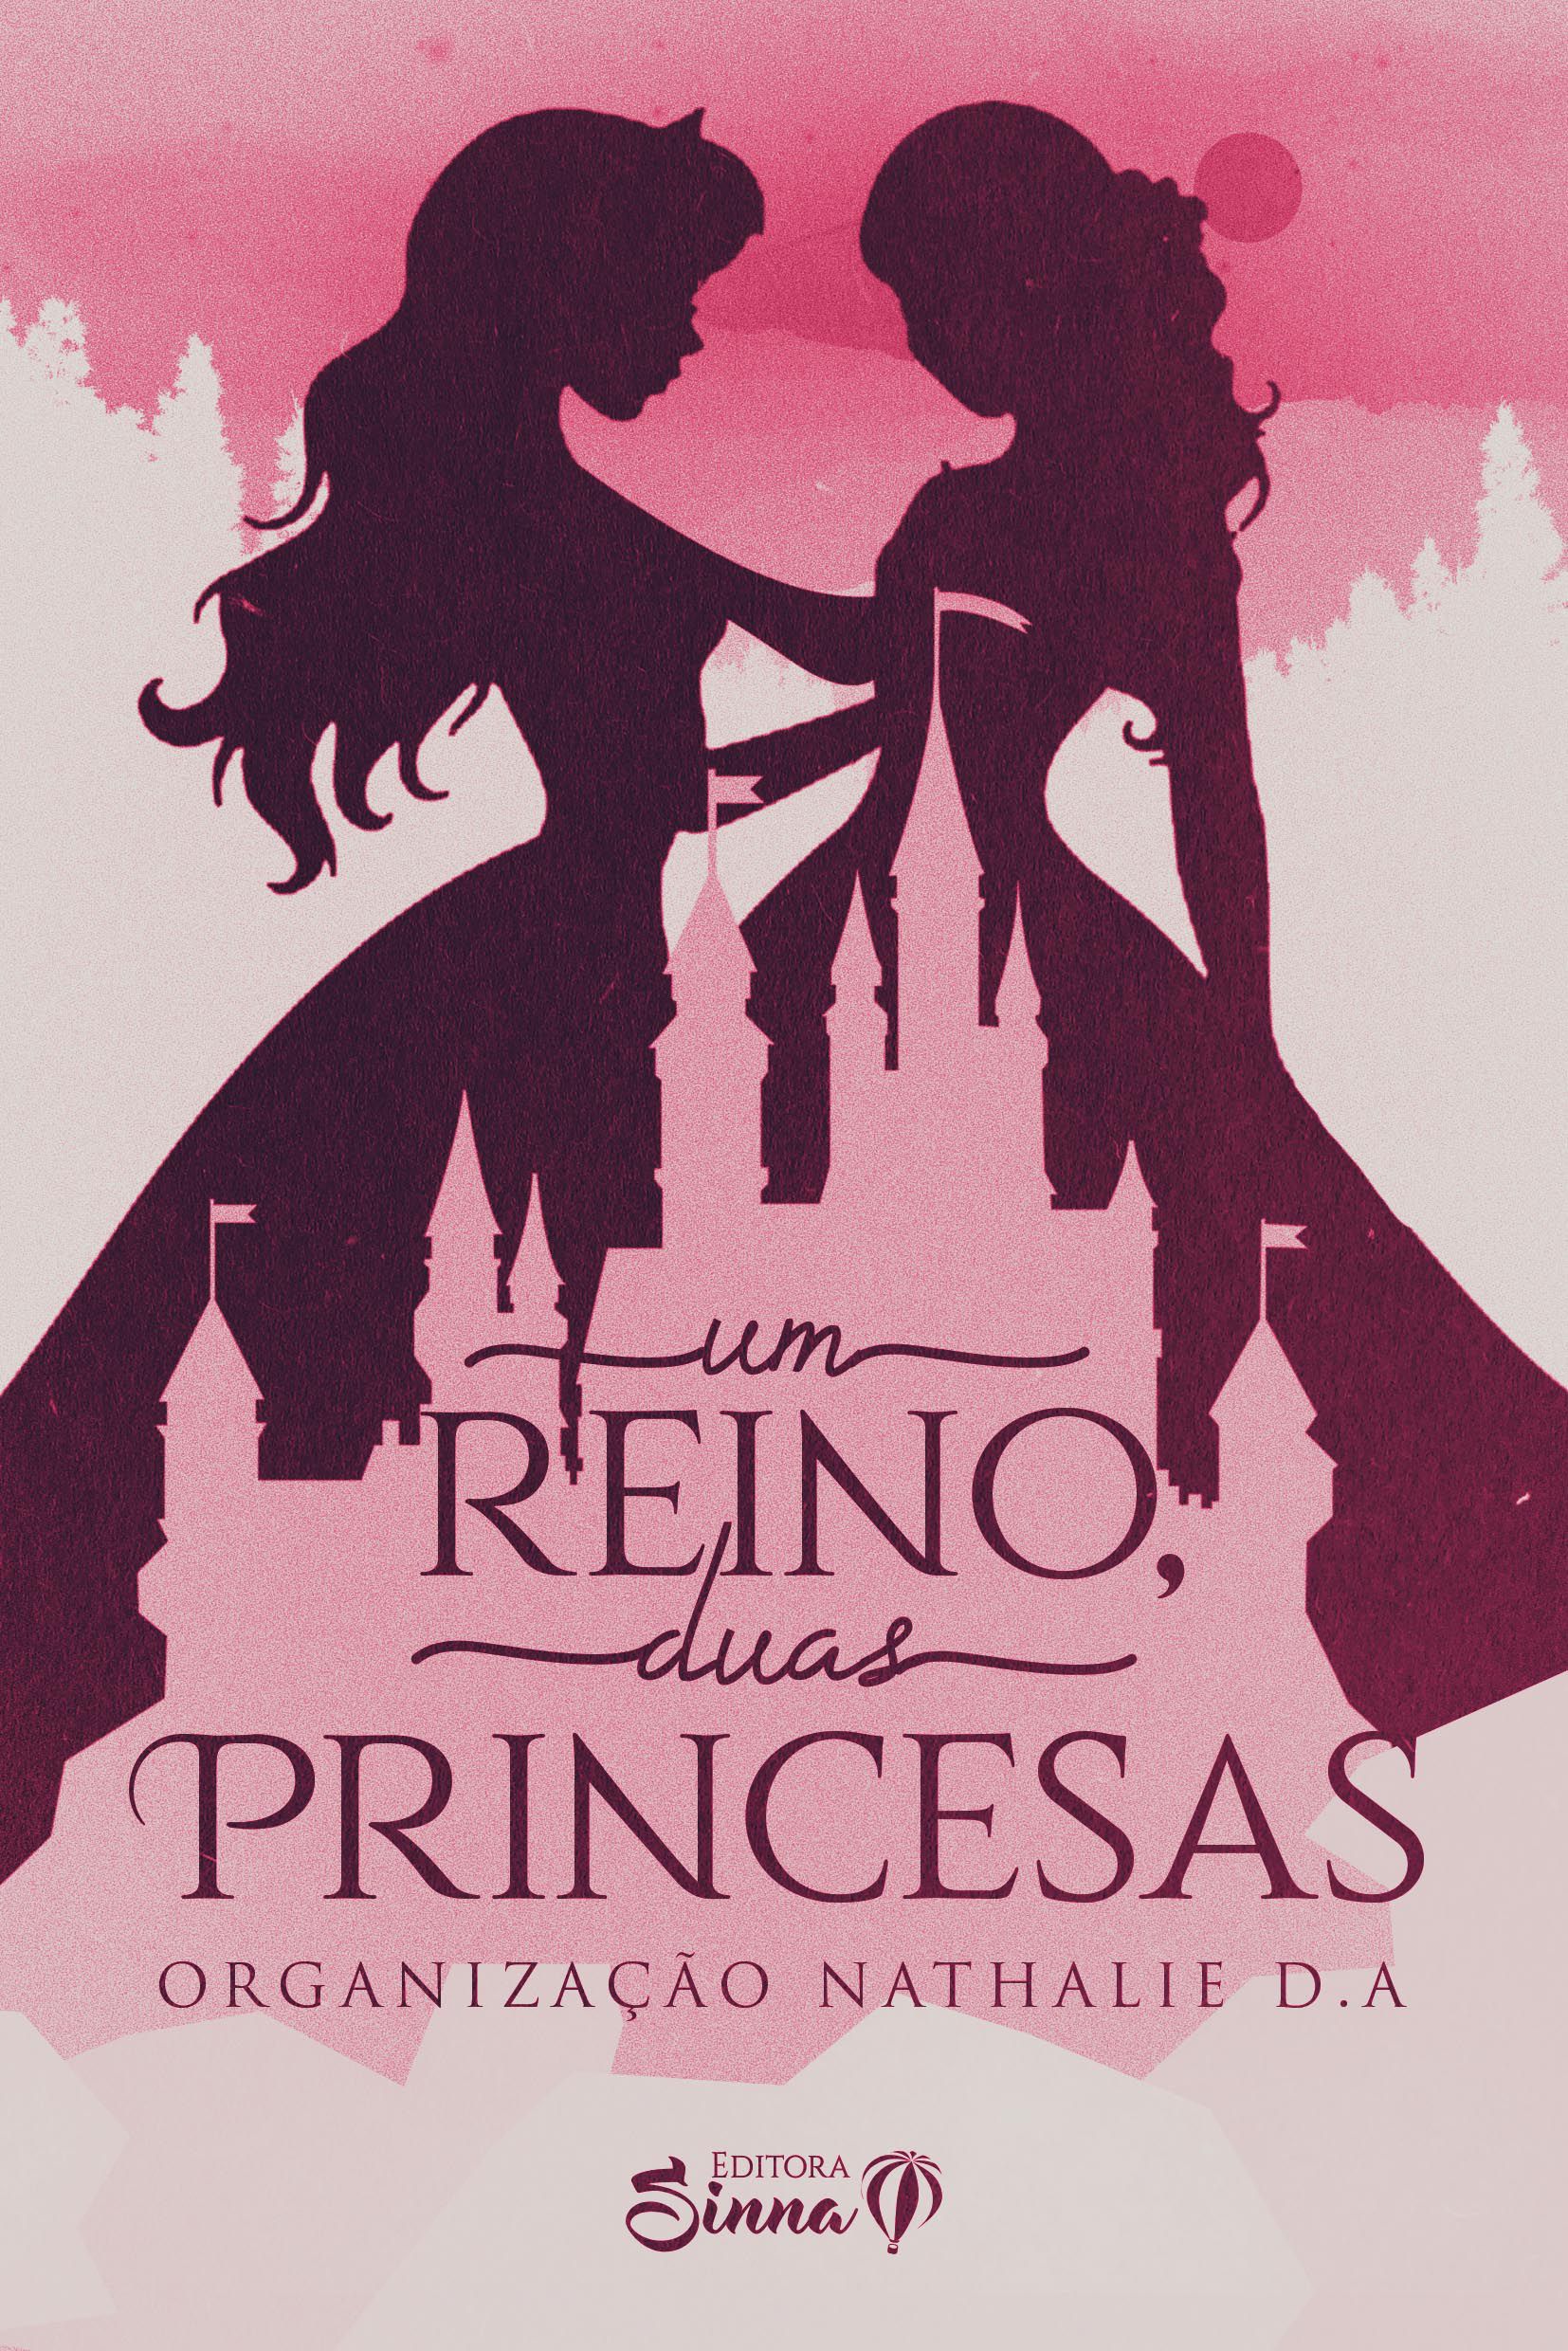 O reino das princesas carecas - Sinopsys Editora